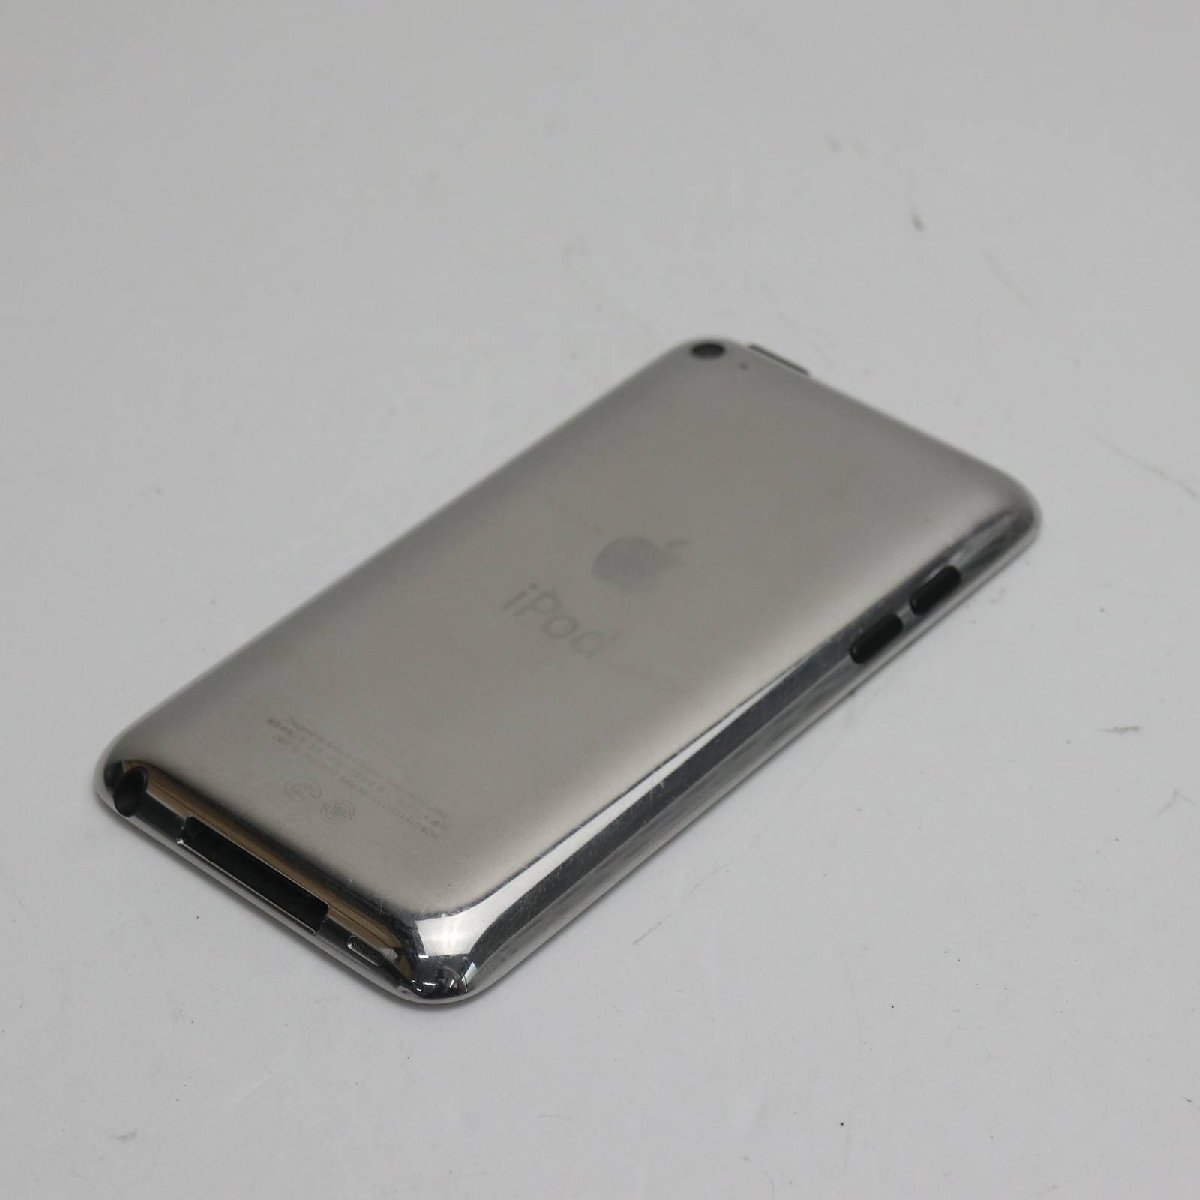 美品 iPod touch 第4世代 8GB ホワイト 即日発送 MD057J/A 本体 あす